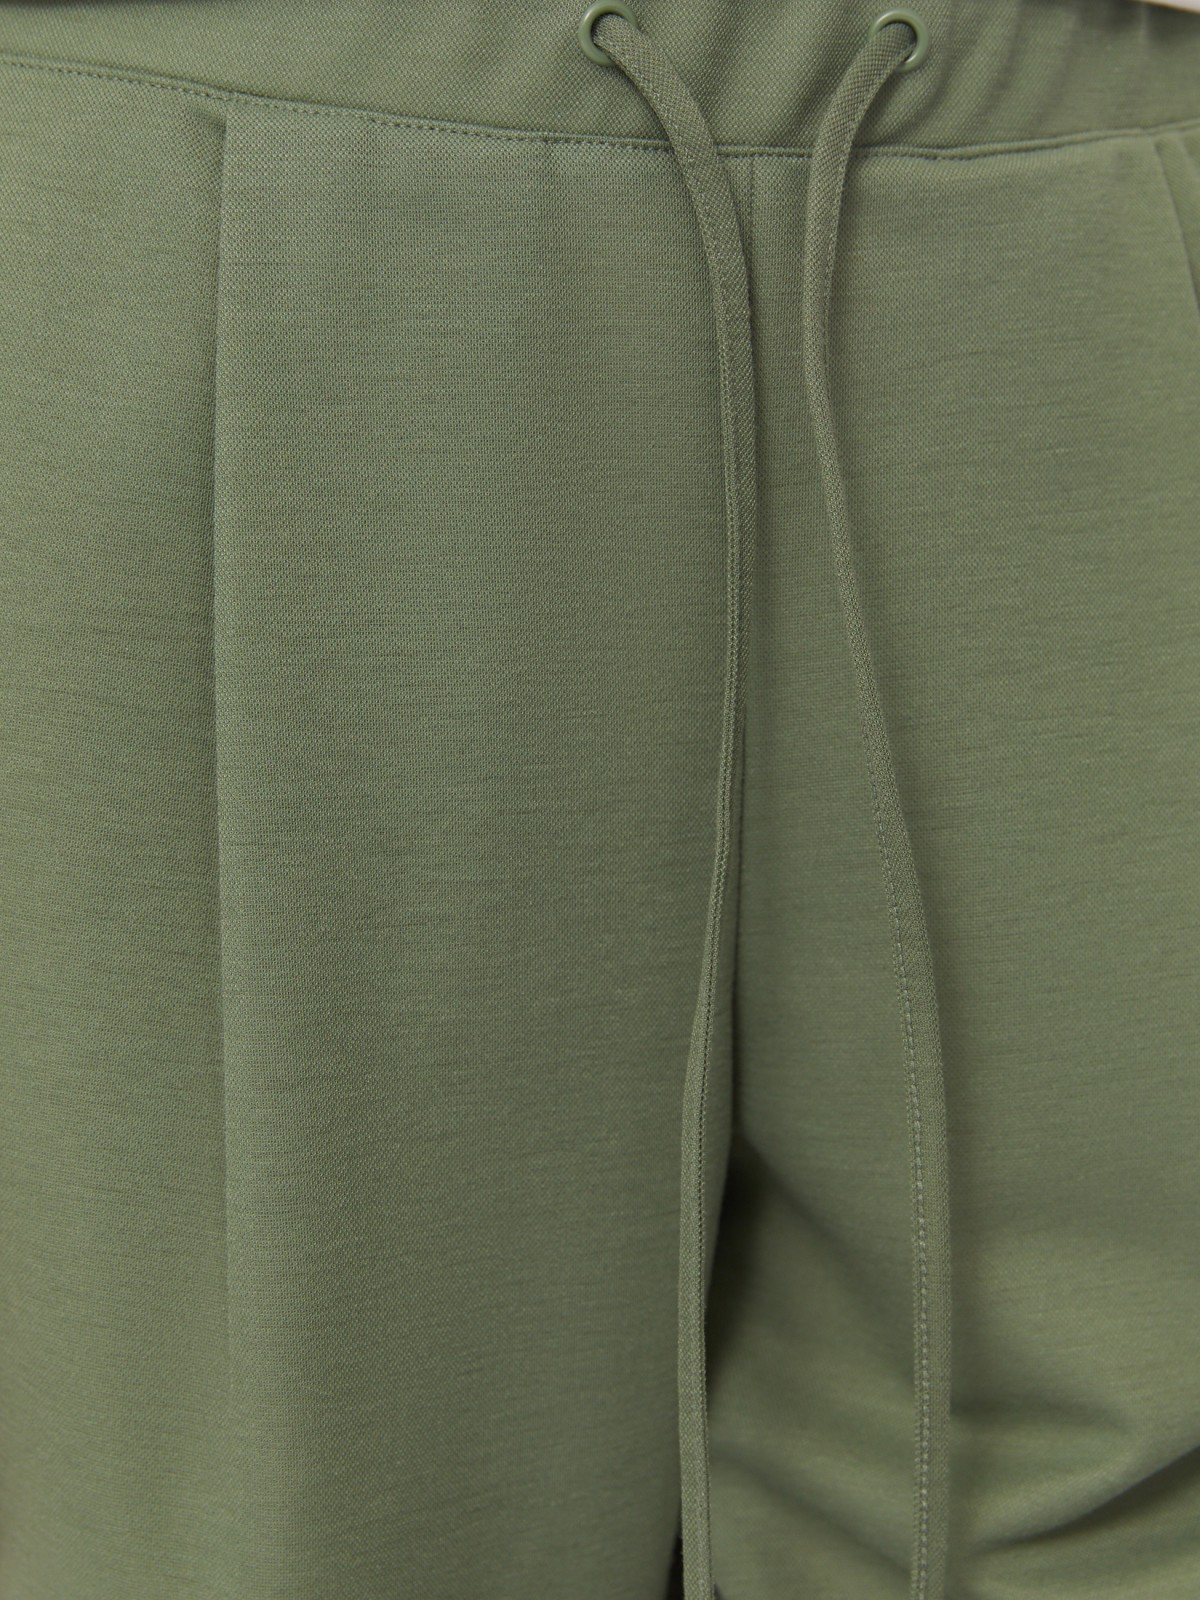 Трикотажные брюки-джоггеры на резинке zolla 02424739Y012, цвет темно-зеленый, размер XS - фото 3